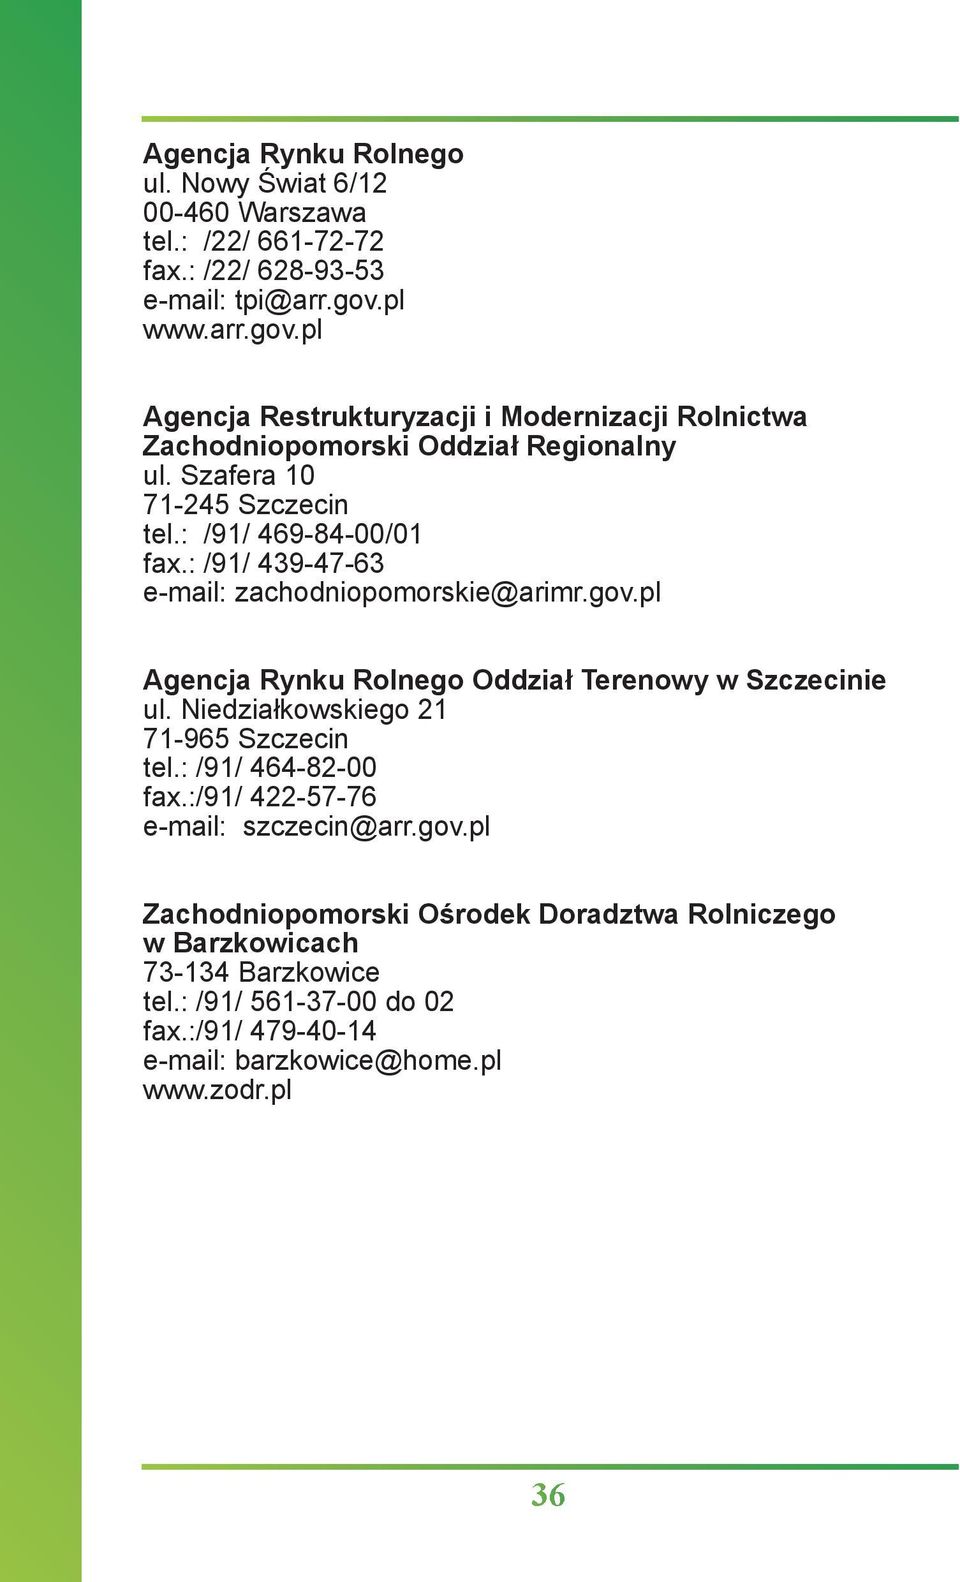 : /91/ 439-47-63 e-mail: zachodniopomorskie@arimr.gov.pl Agencja Rynku Rolnego Oddział Terenowy w Szczecinie ul. Niedziałkowskiego 21 71-965 Szczecin tel.